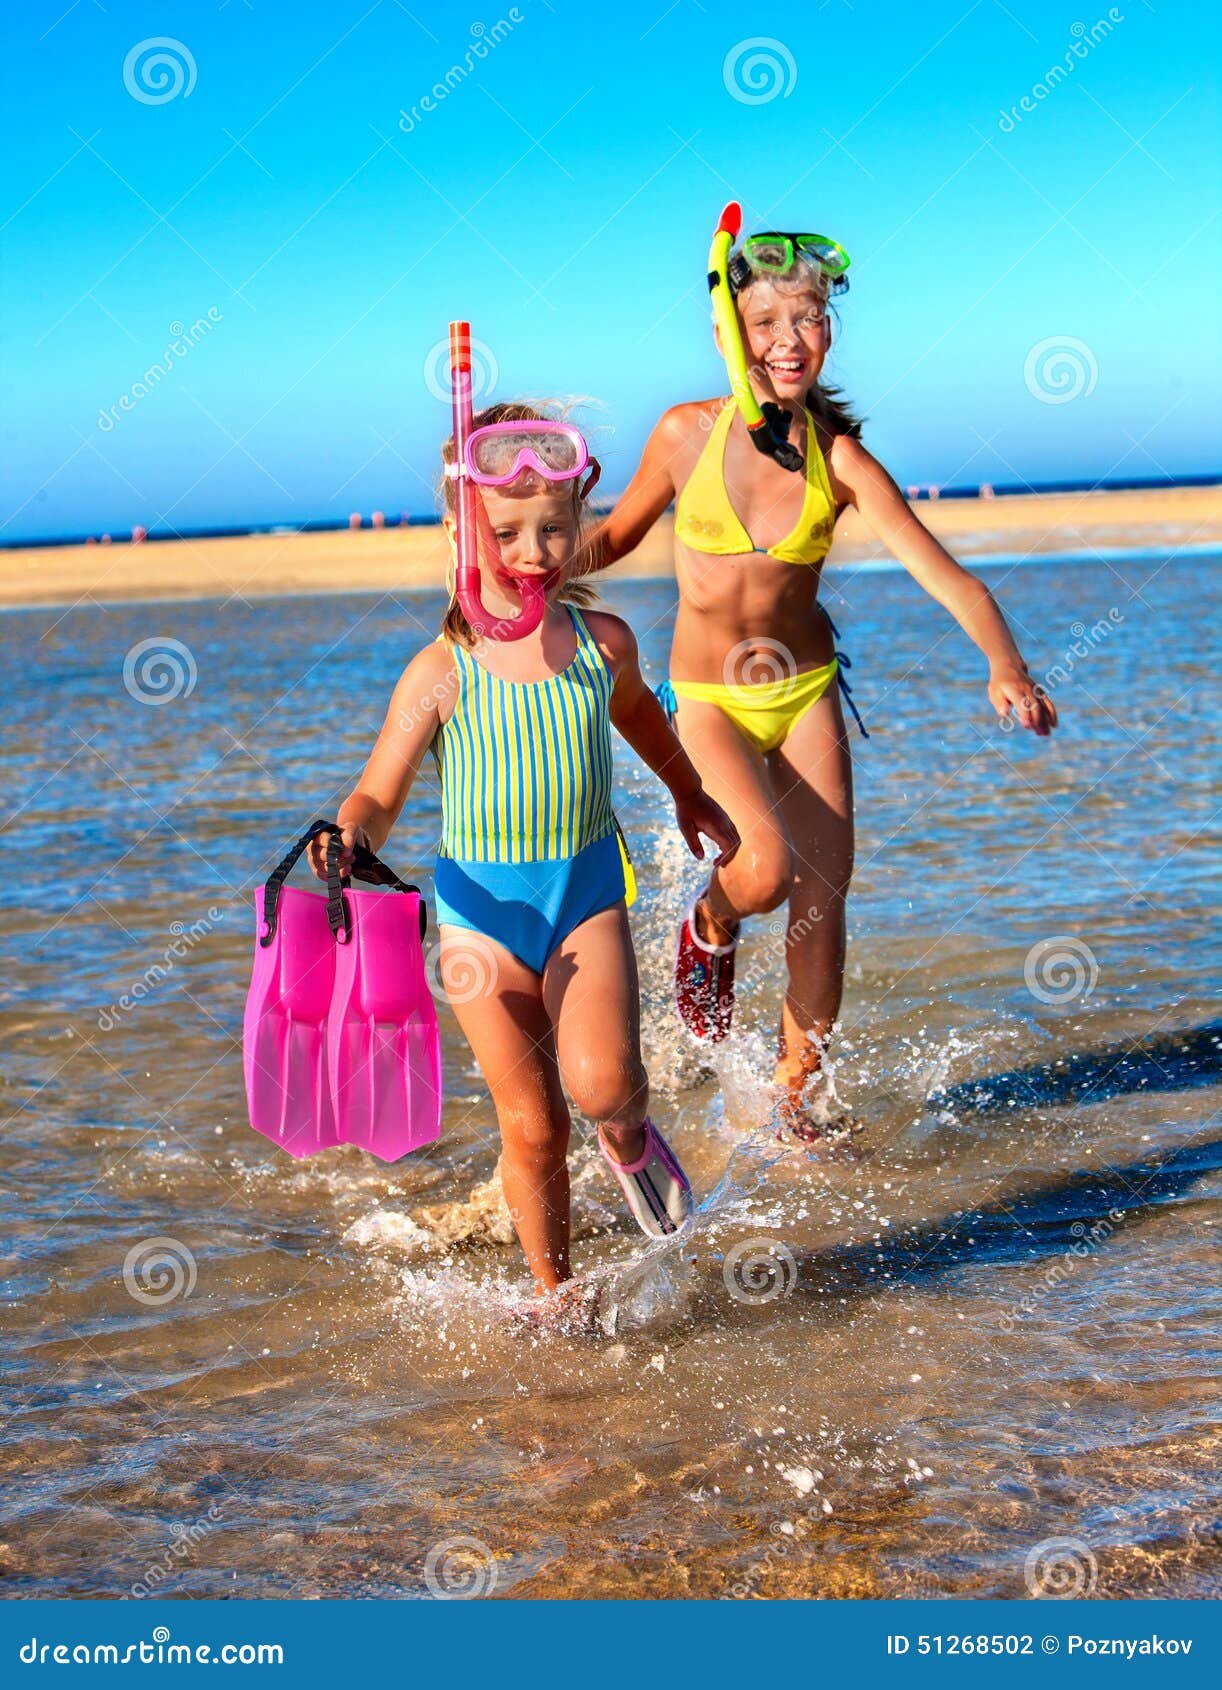 нудистский пляж с голыми детьми фото 81